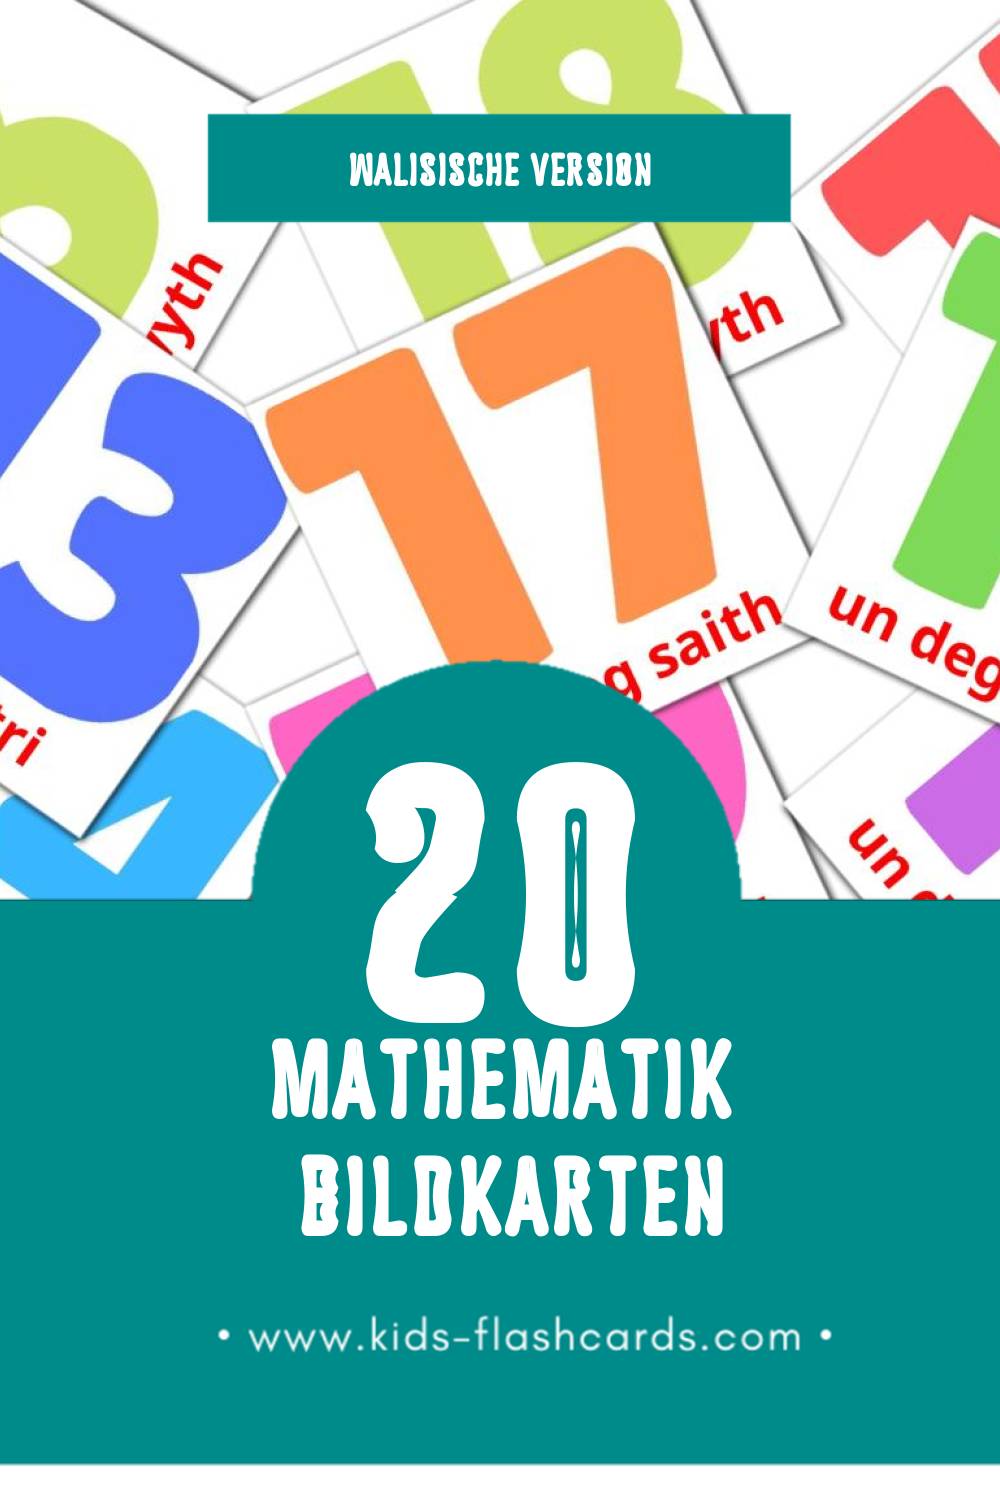 Visual Mathemateg Flashcards für Kleinkinder (20 Karten in Walisisch)